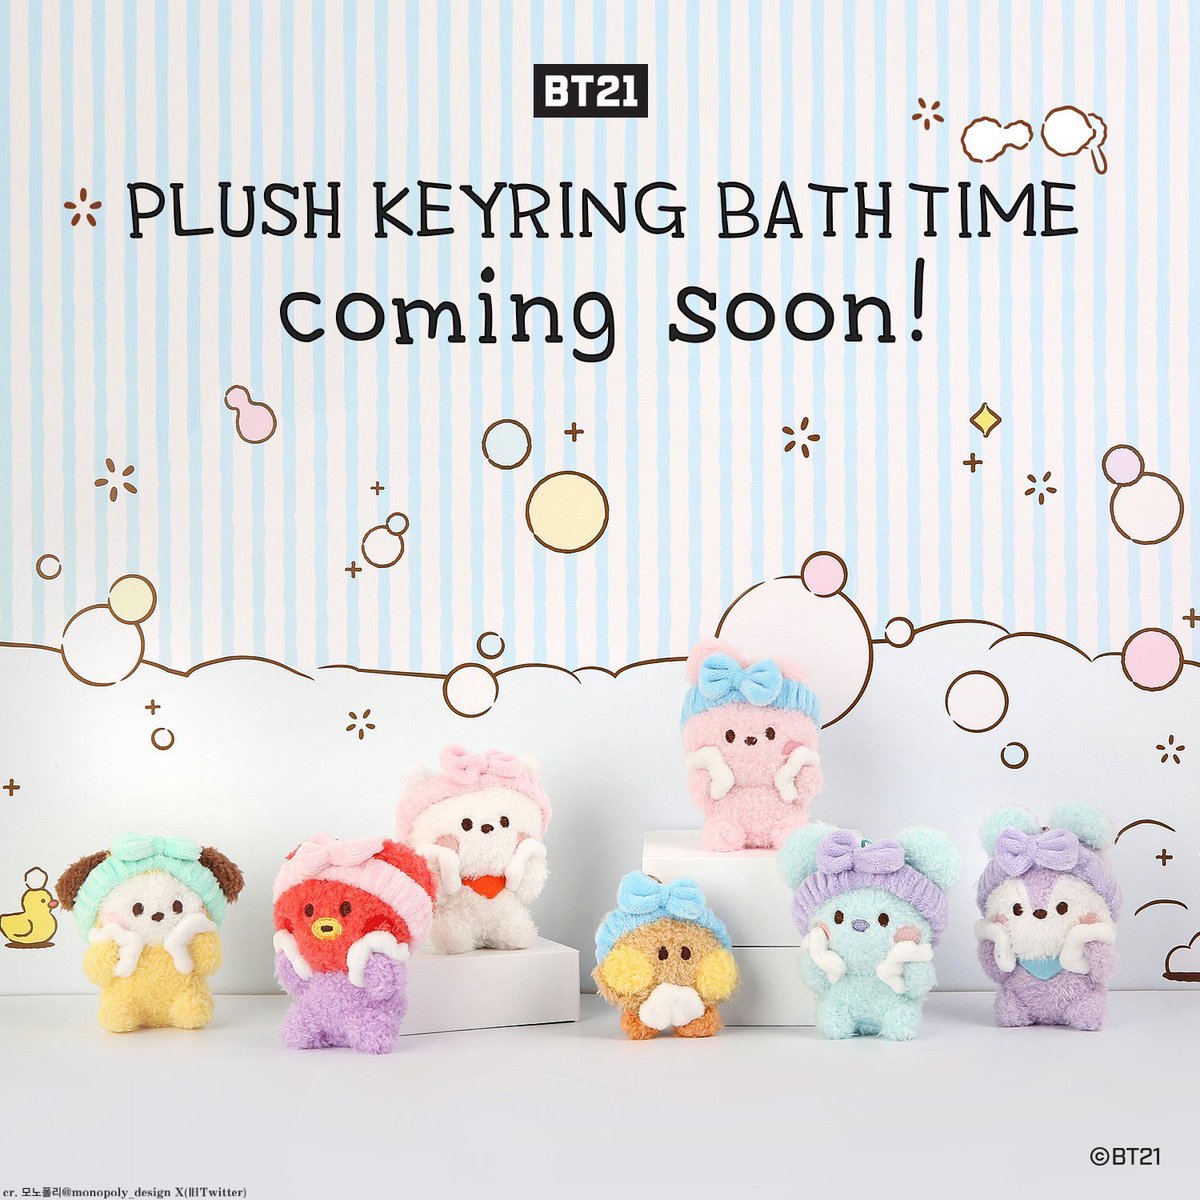 BT21の可愛いぬいぐるみ「PLUSH KEYRING BATH TIME」が日本からも購入可能に エアバンドをつけてスキンケアする7人のキャラクターのぬいぐるみキーリングが日本からも購入できるようになりました！ バスタイム(入浴)をテーマにしています。 可愛すぎる🥰💜 購入はこちら▼ bts613-bighit.com/bt21-minini-pl…